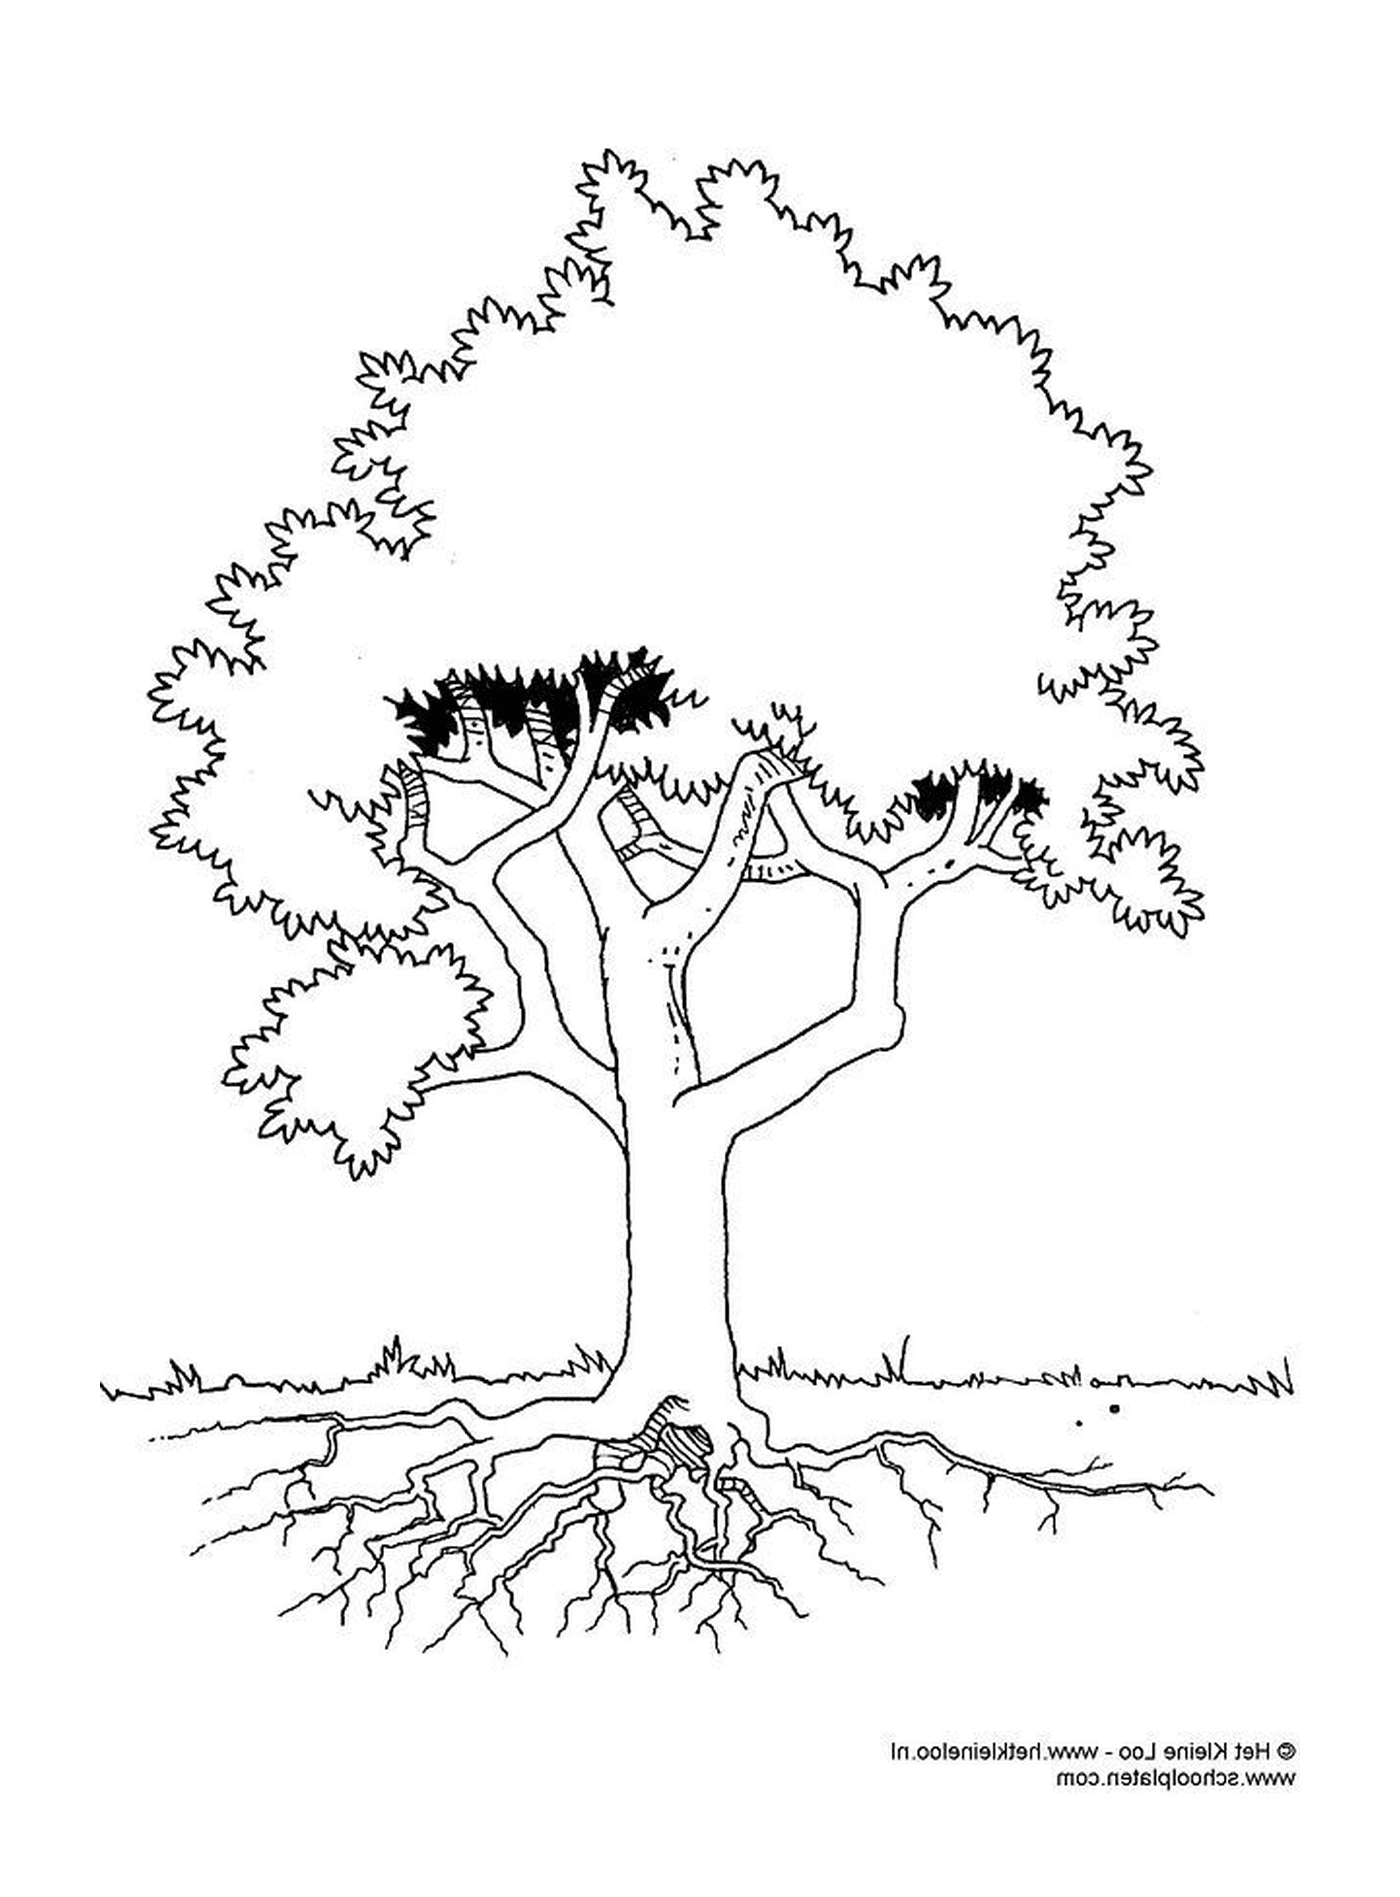  Uma árvore com raízes 